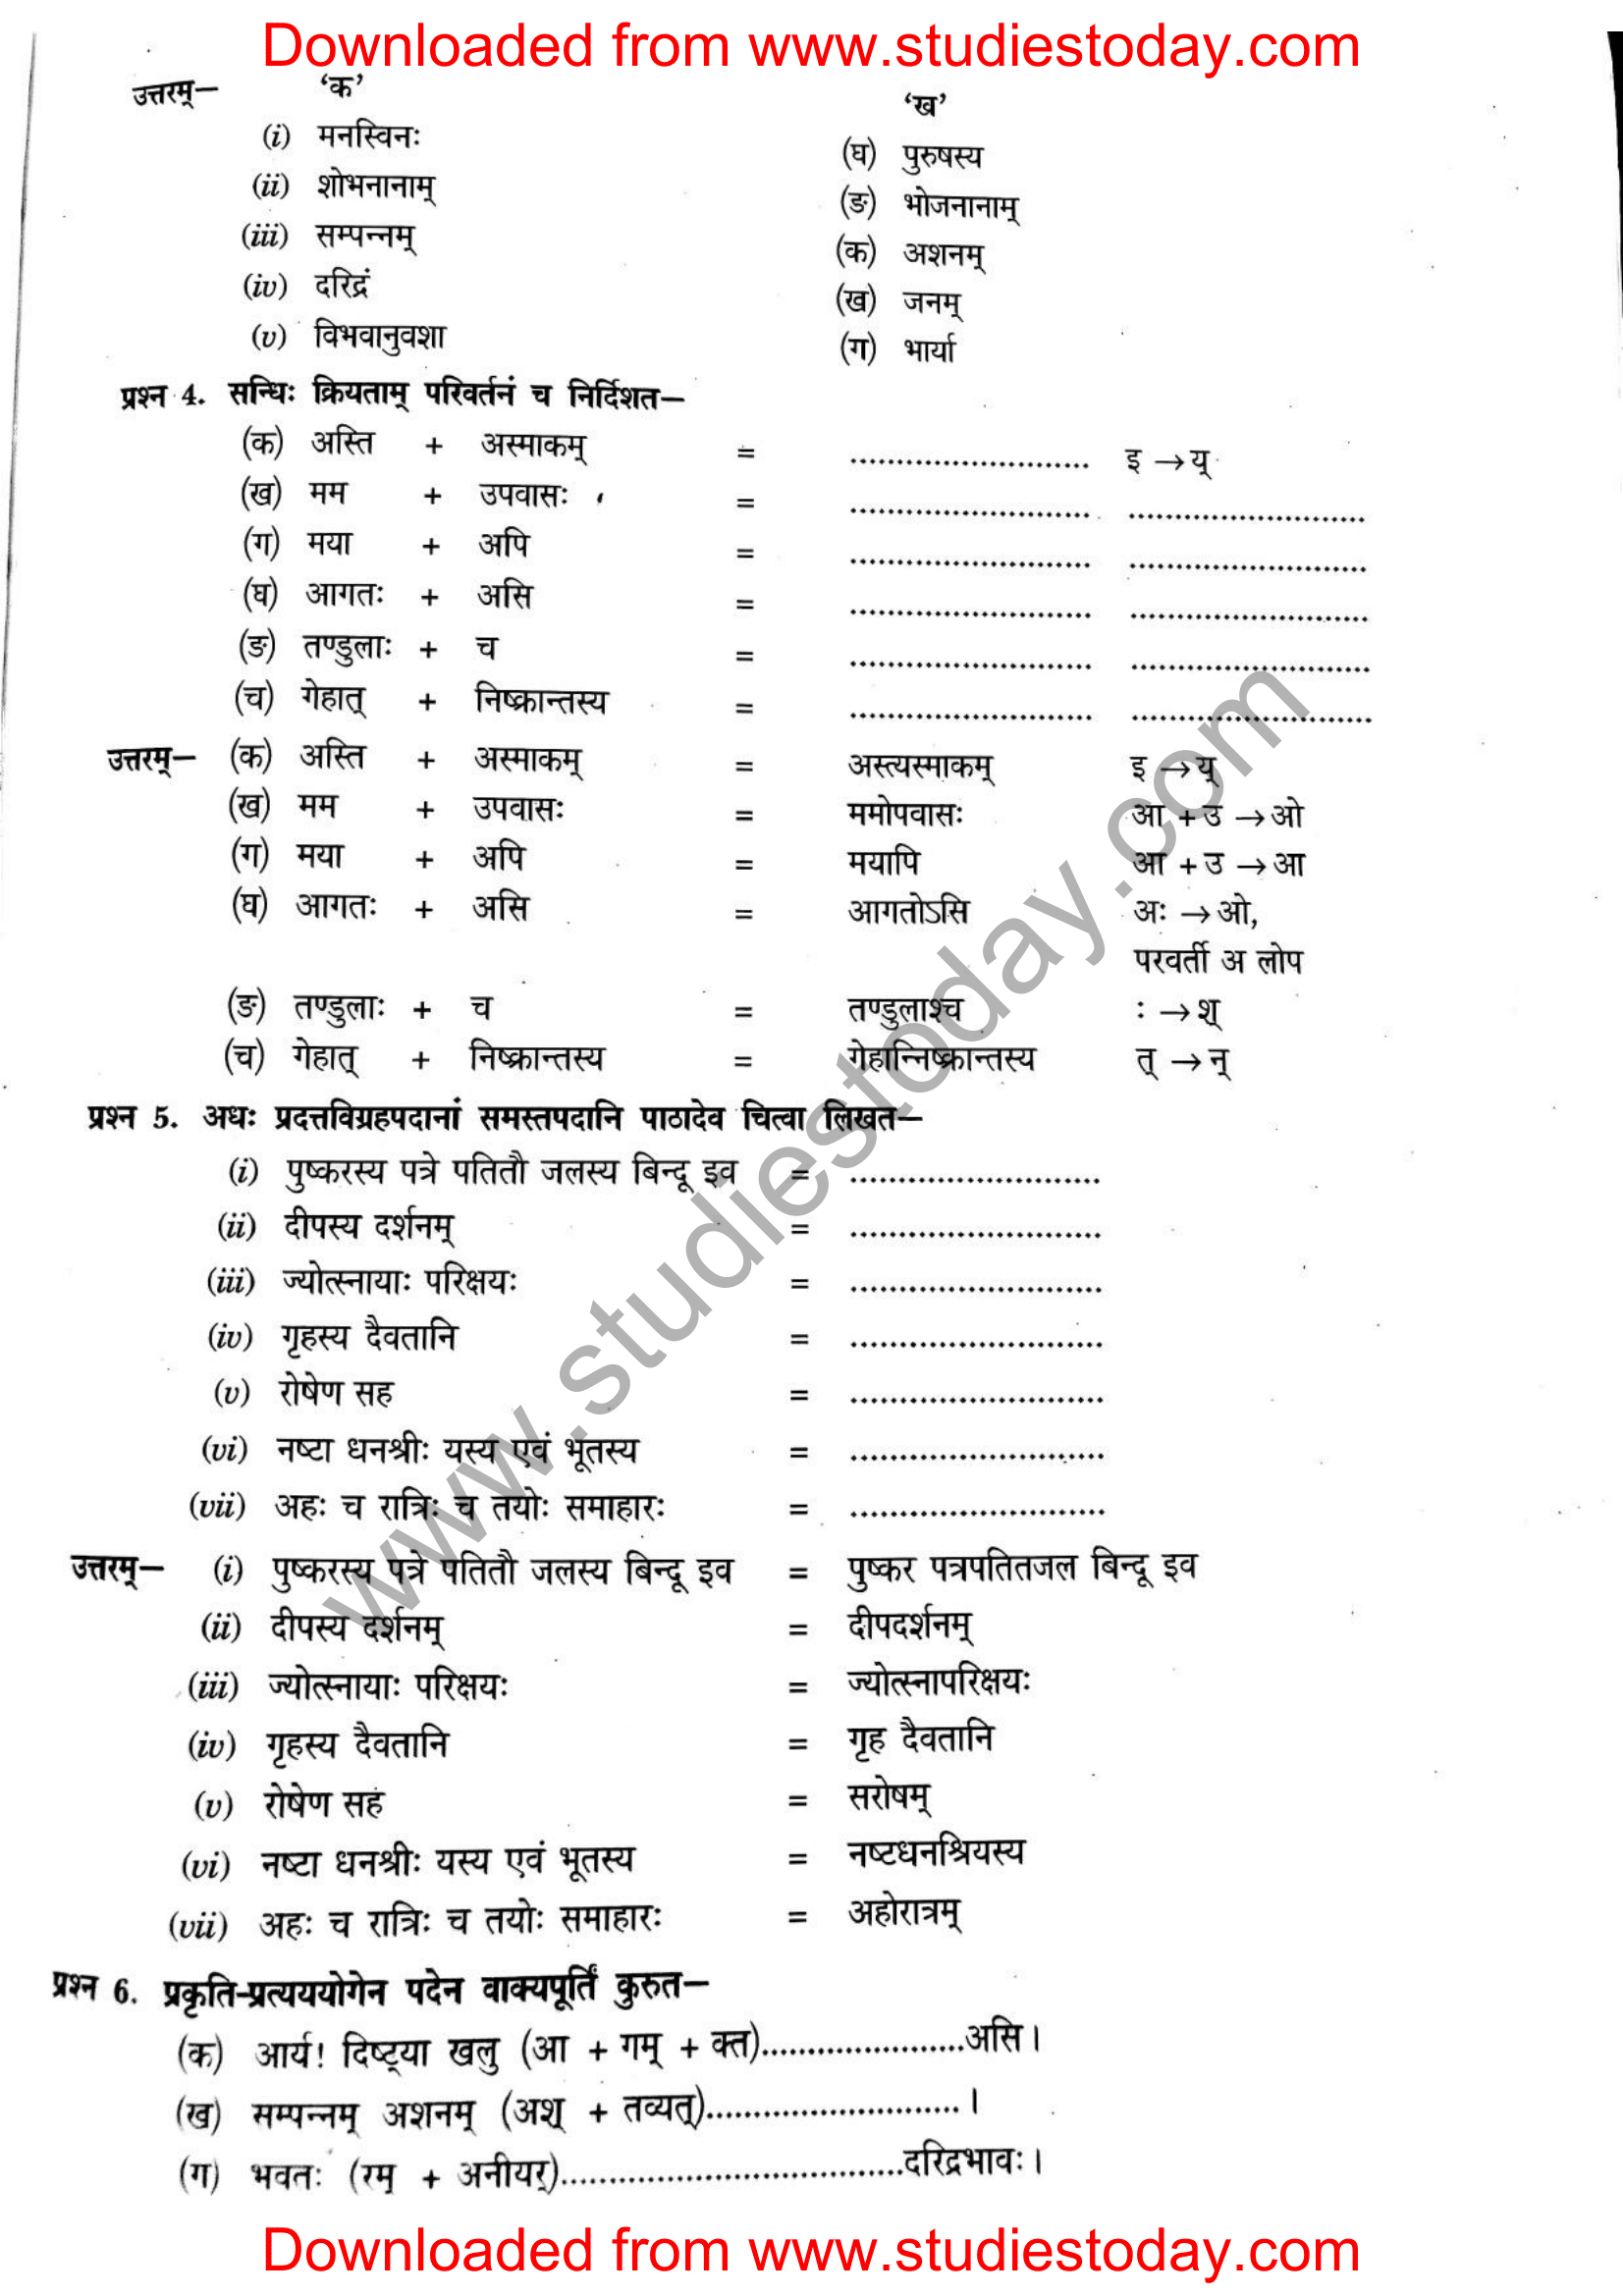 ncert-solutions-class-12-sanskrit-ritikia-chapter-7-09